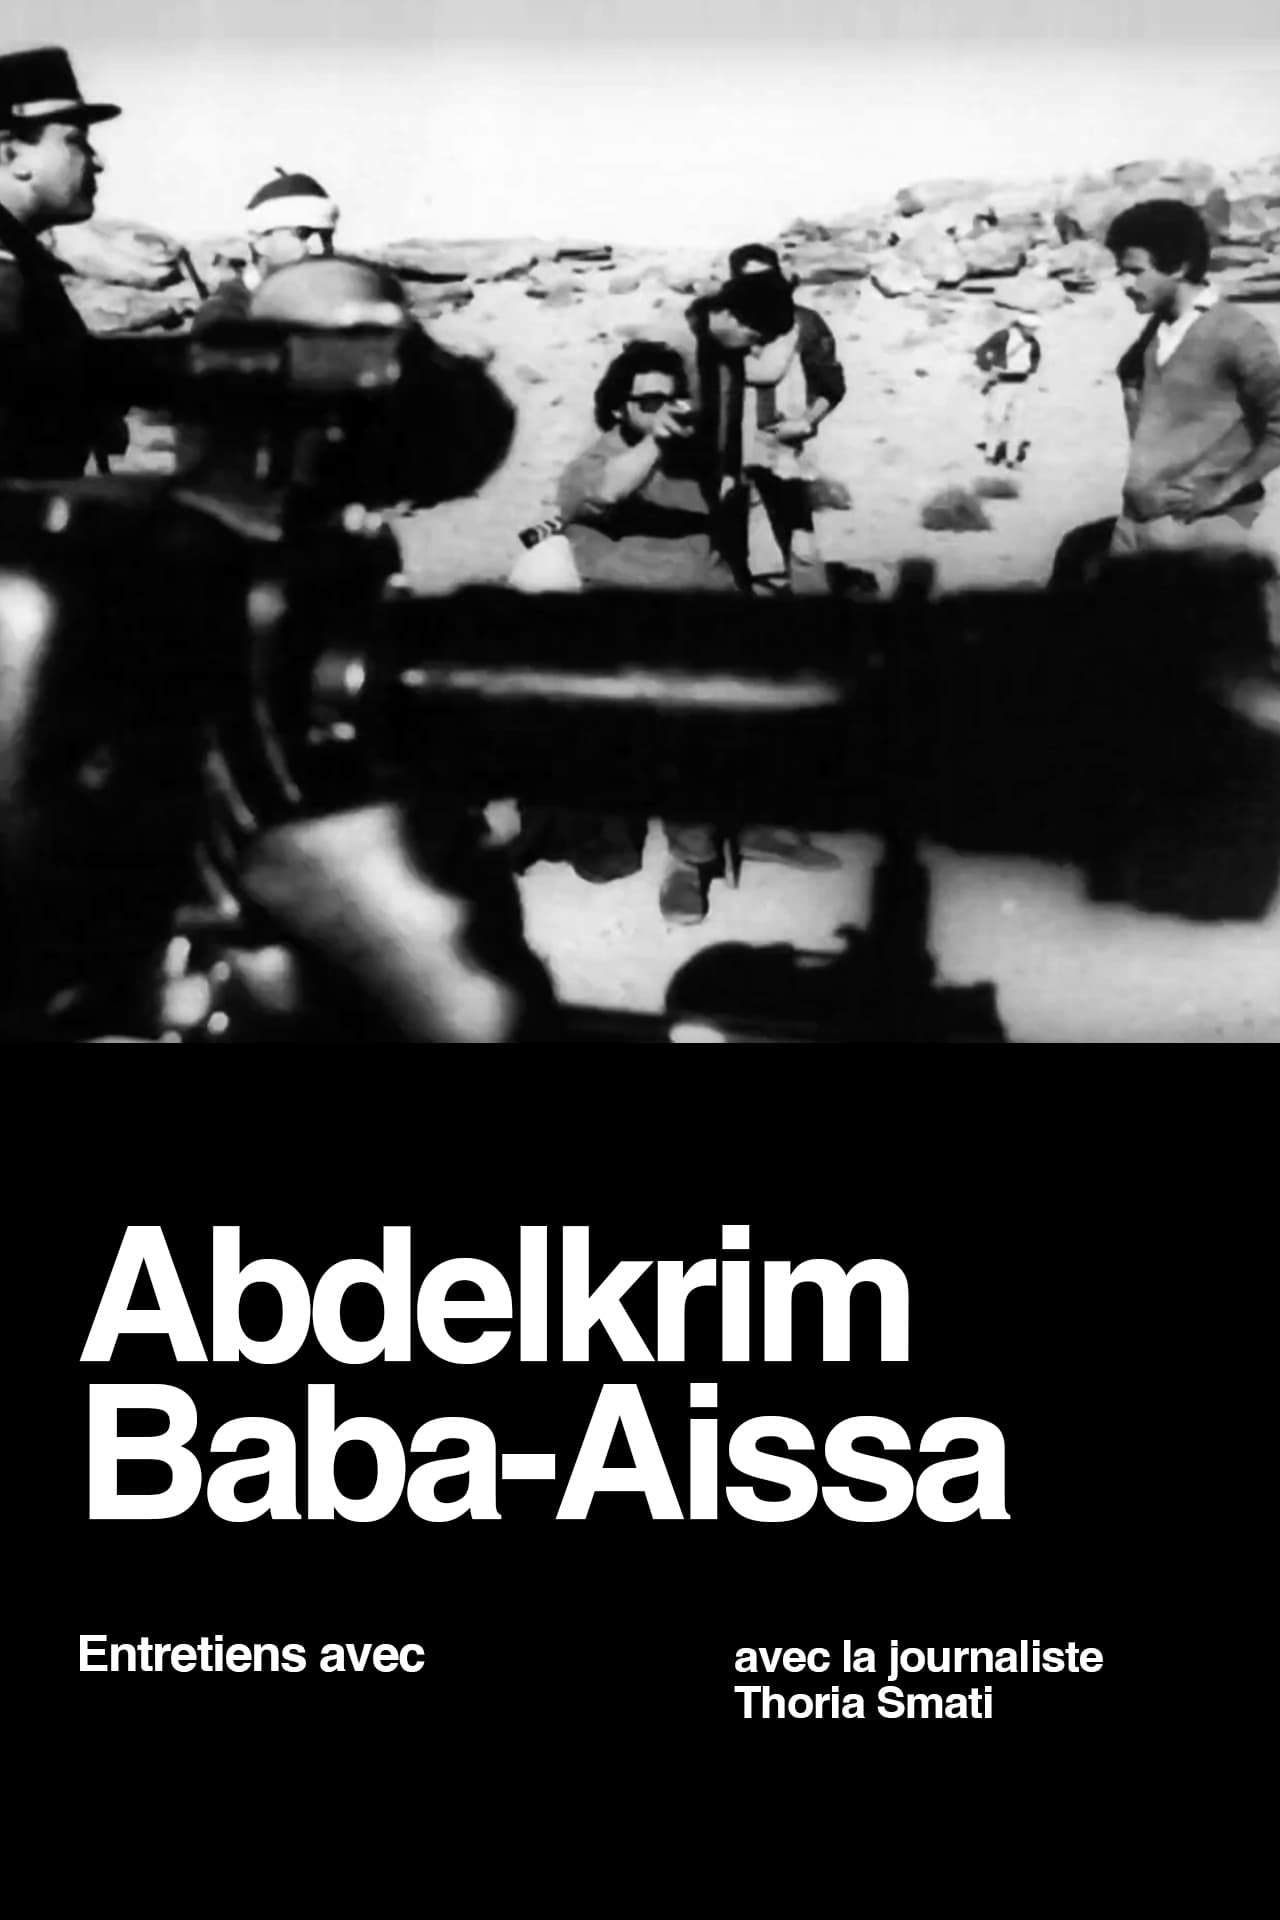 Interviews with Abdelkrim Baba Aïssa